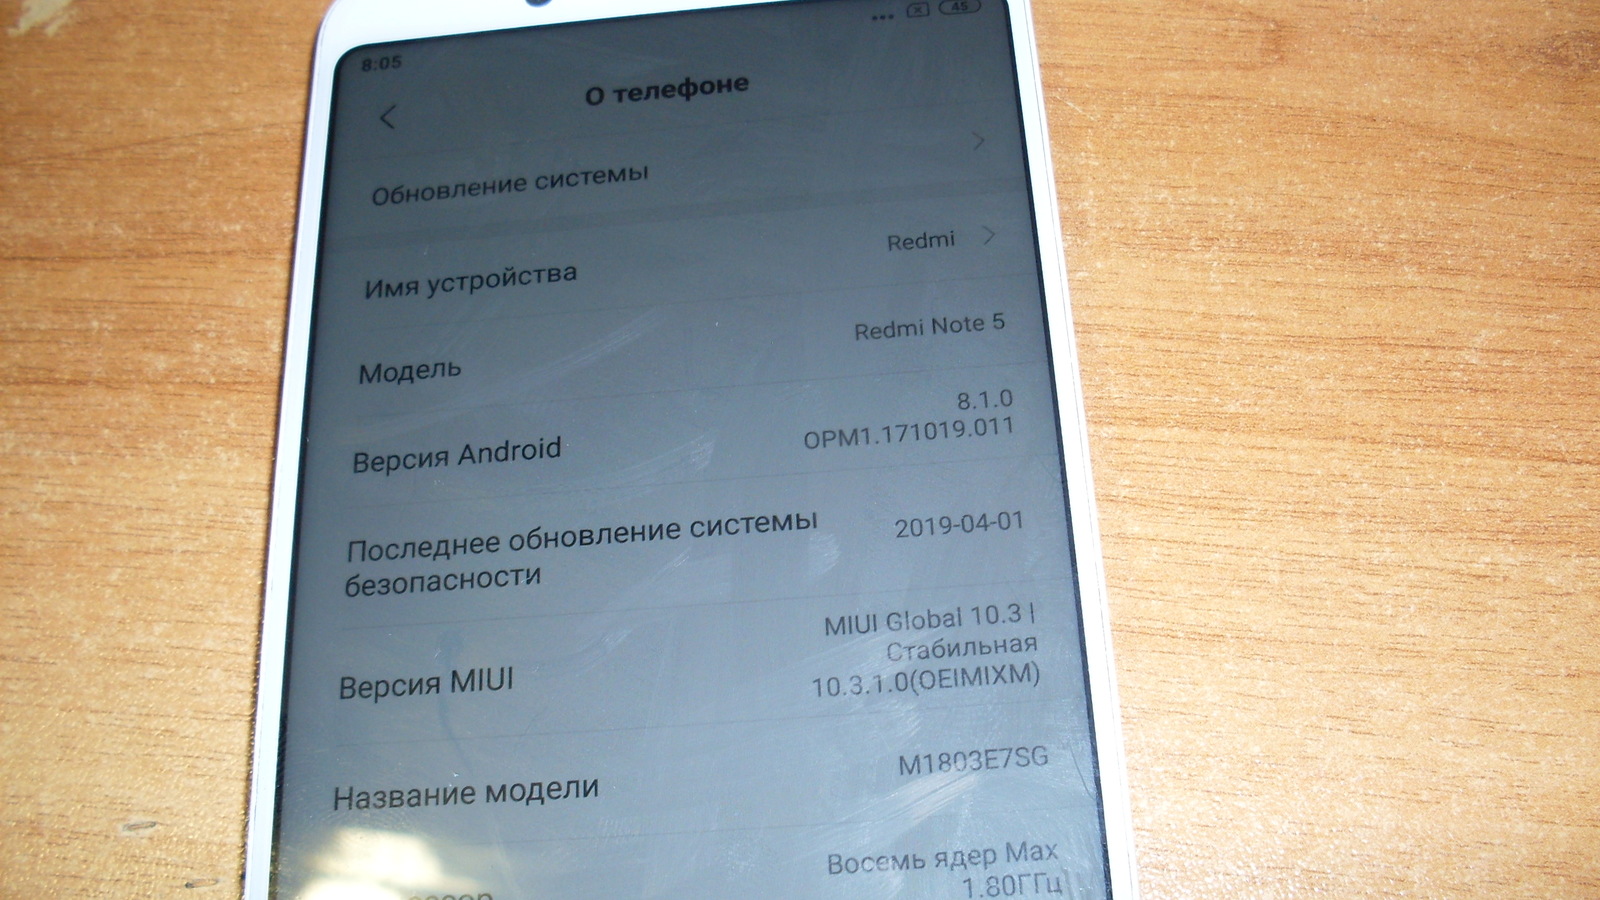 Redmi Note 9 Mi Account Unlock